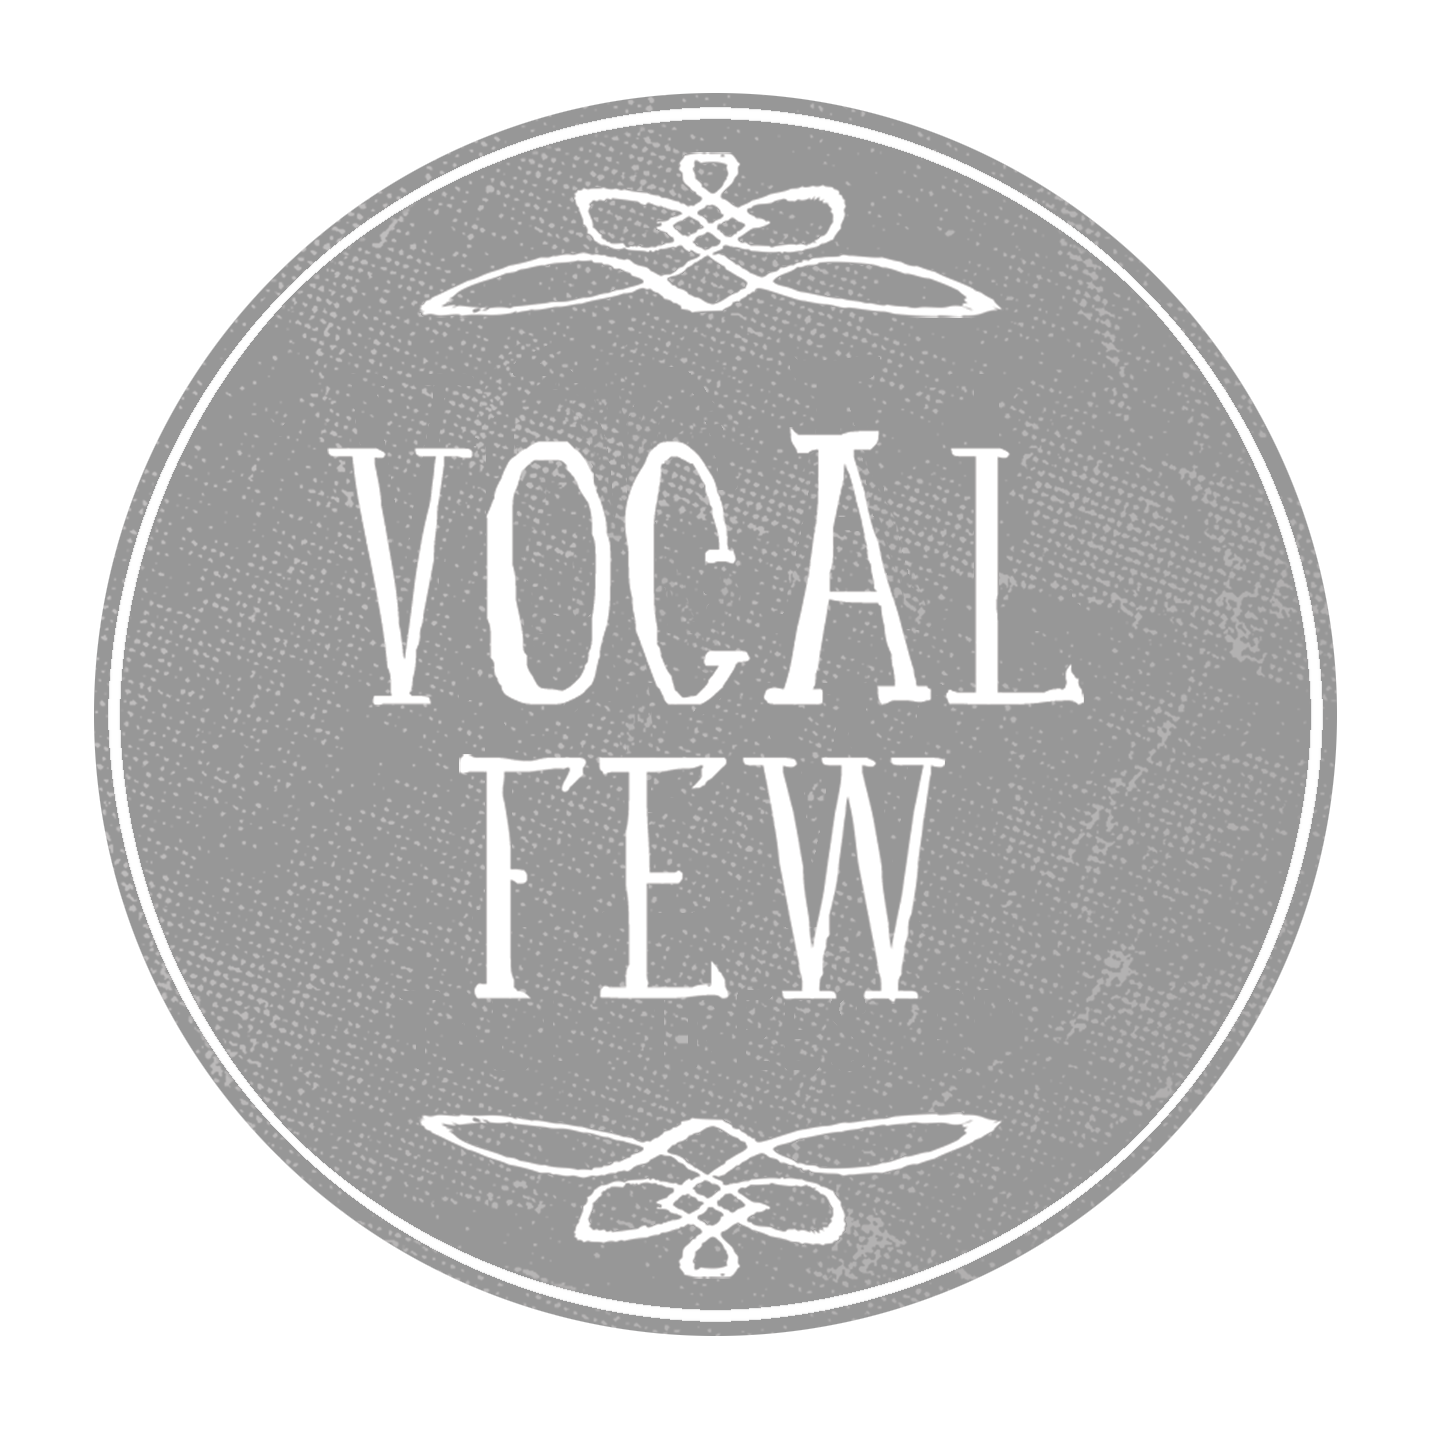 Vocal Few